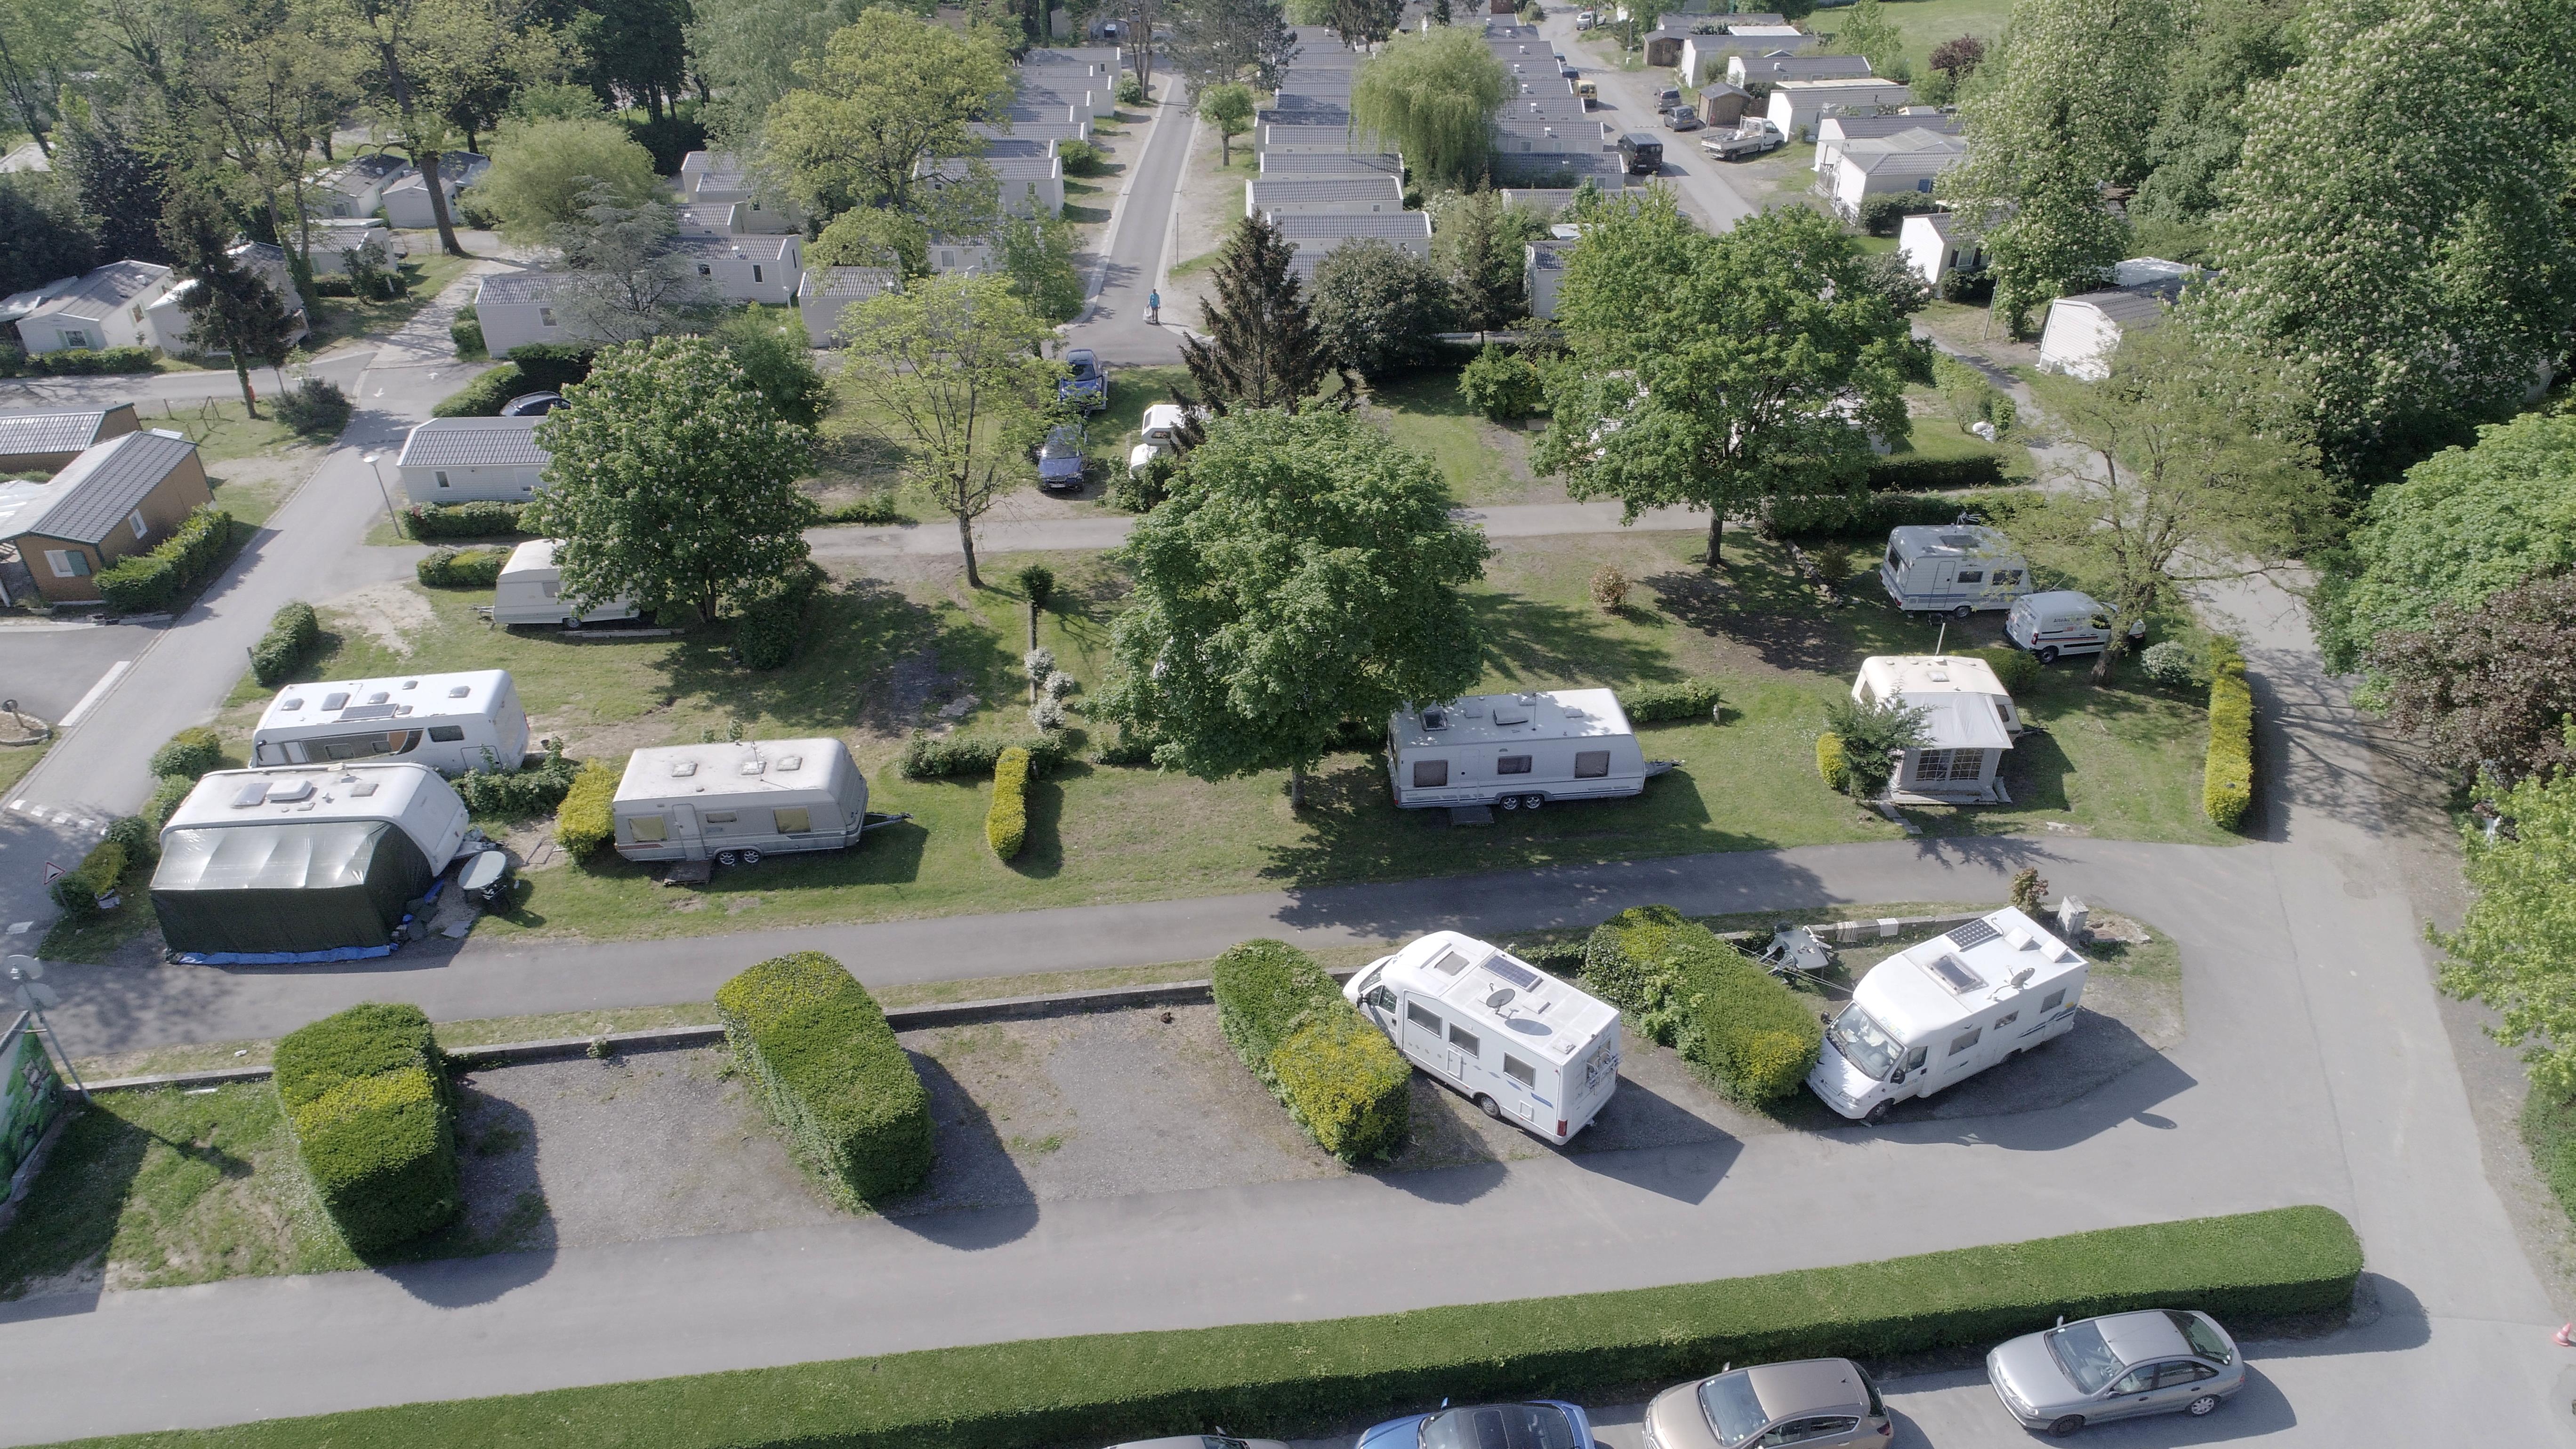 Emplacement - Emplacement Caravane, Camping-Car Et Tente - Camping Club Le Parc de Paris